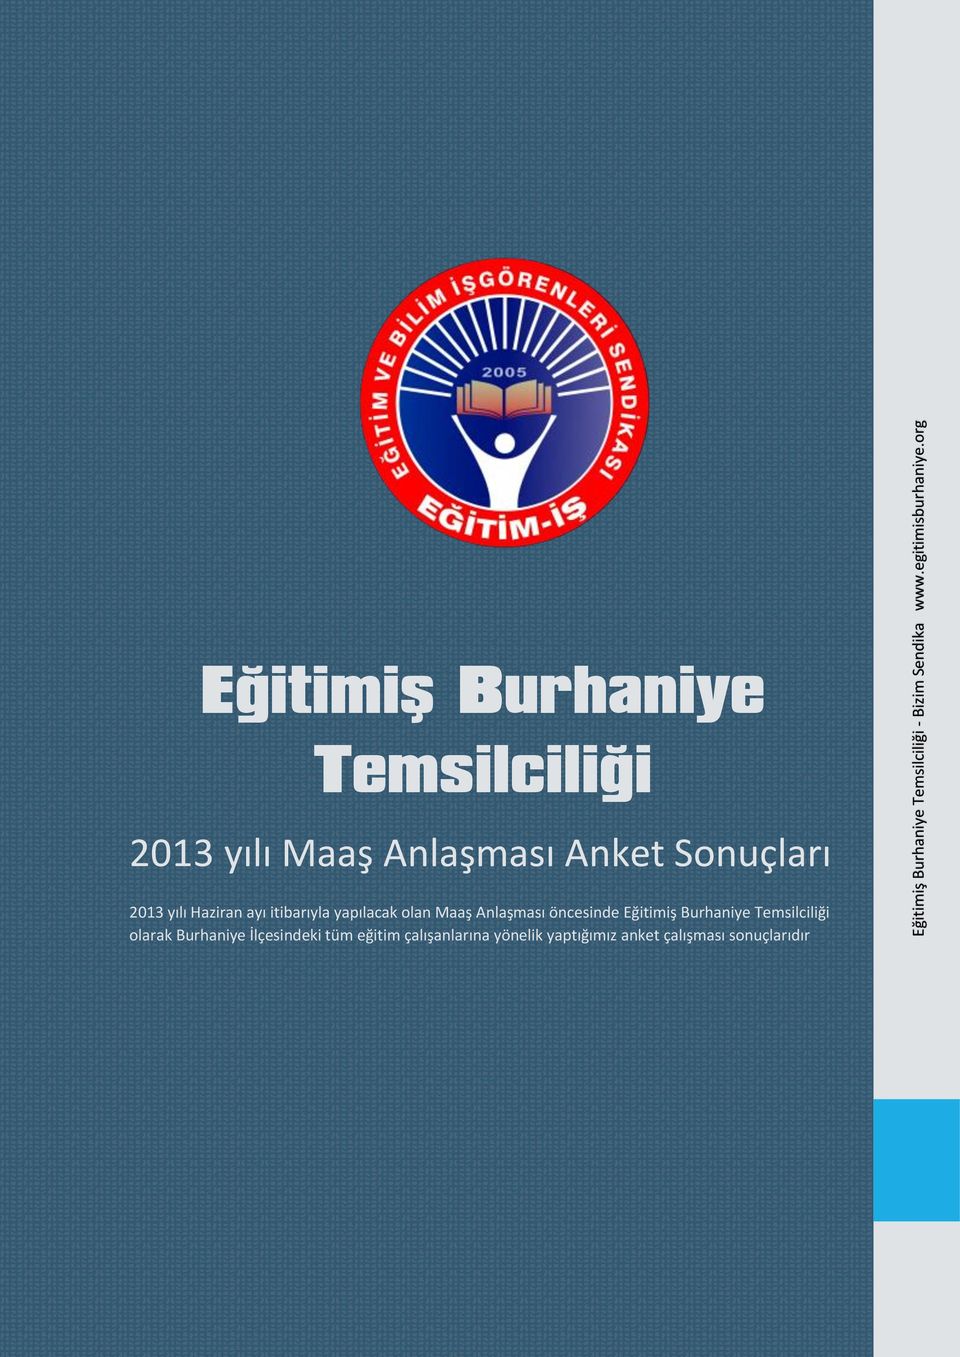 Sonuçları 2013 yılı Haziran ayı itibarıyla yapılacak olan Maaş Anlaşması